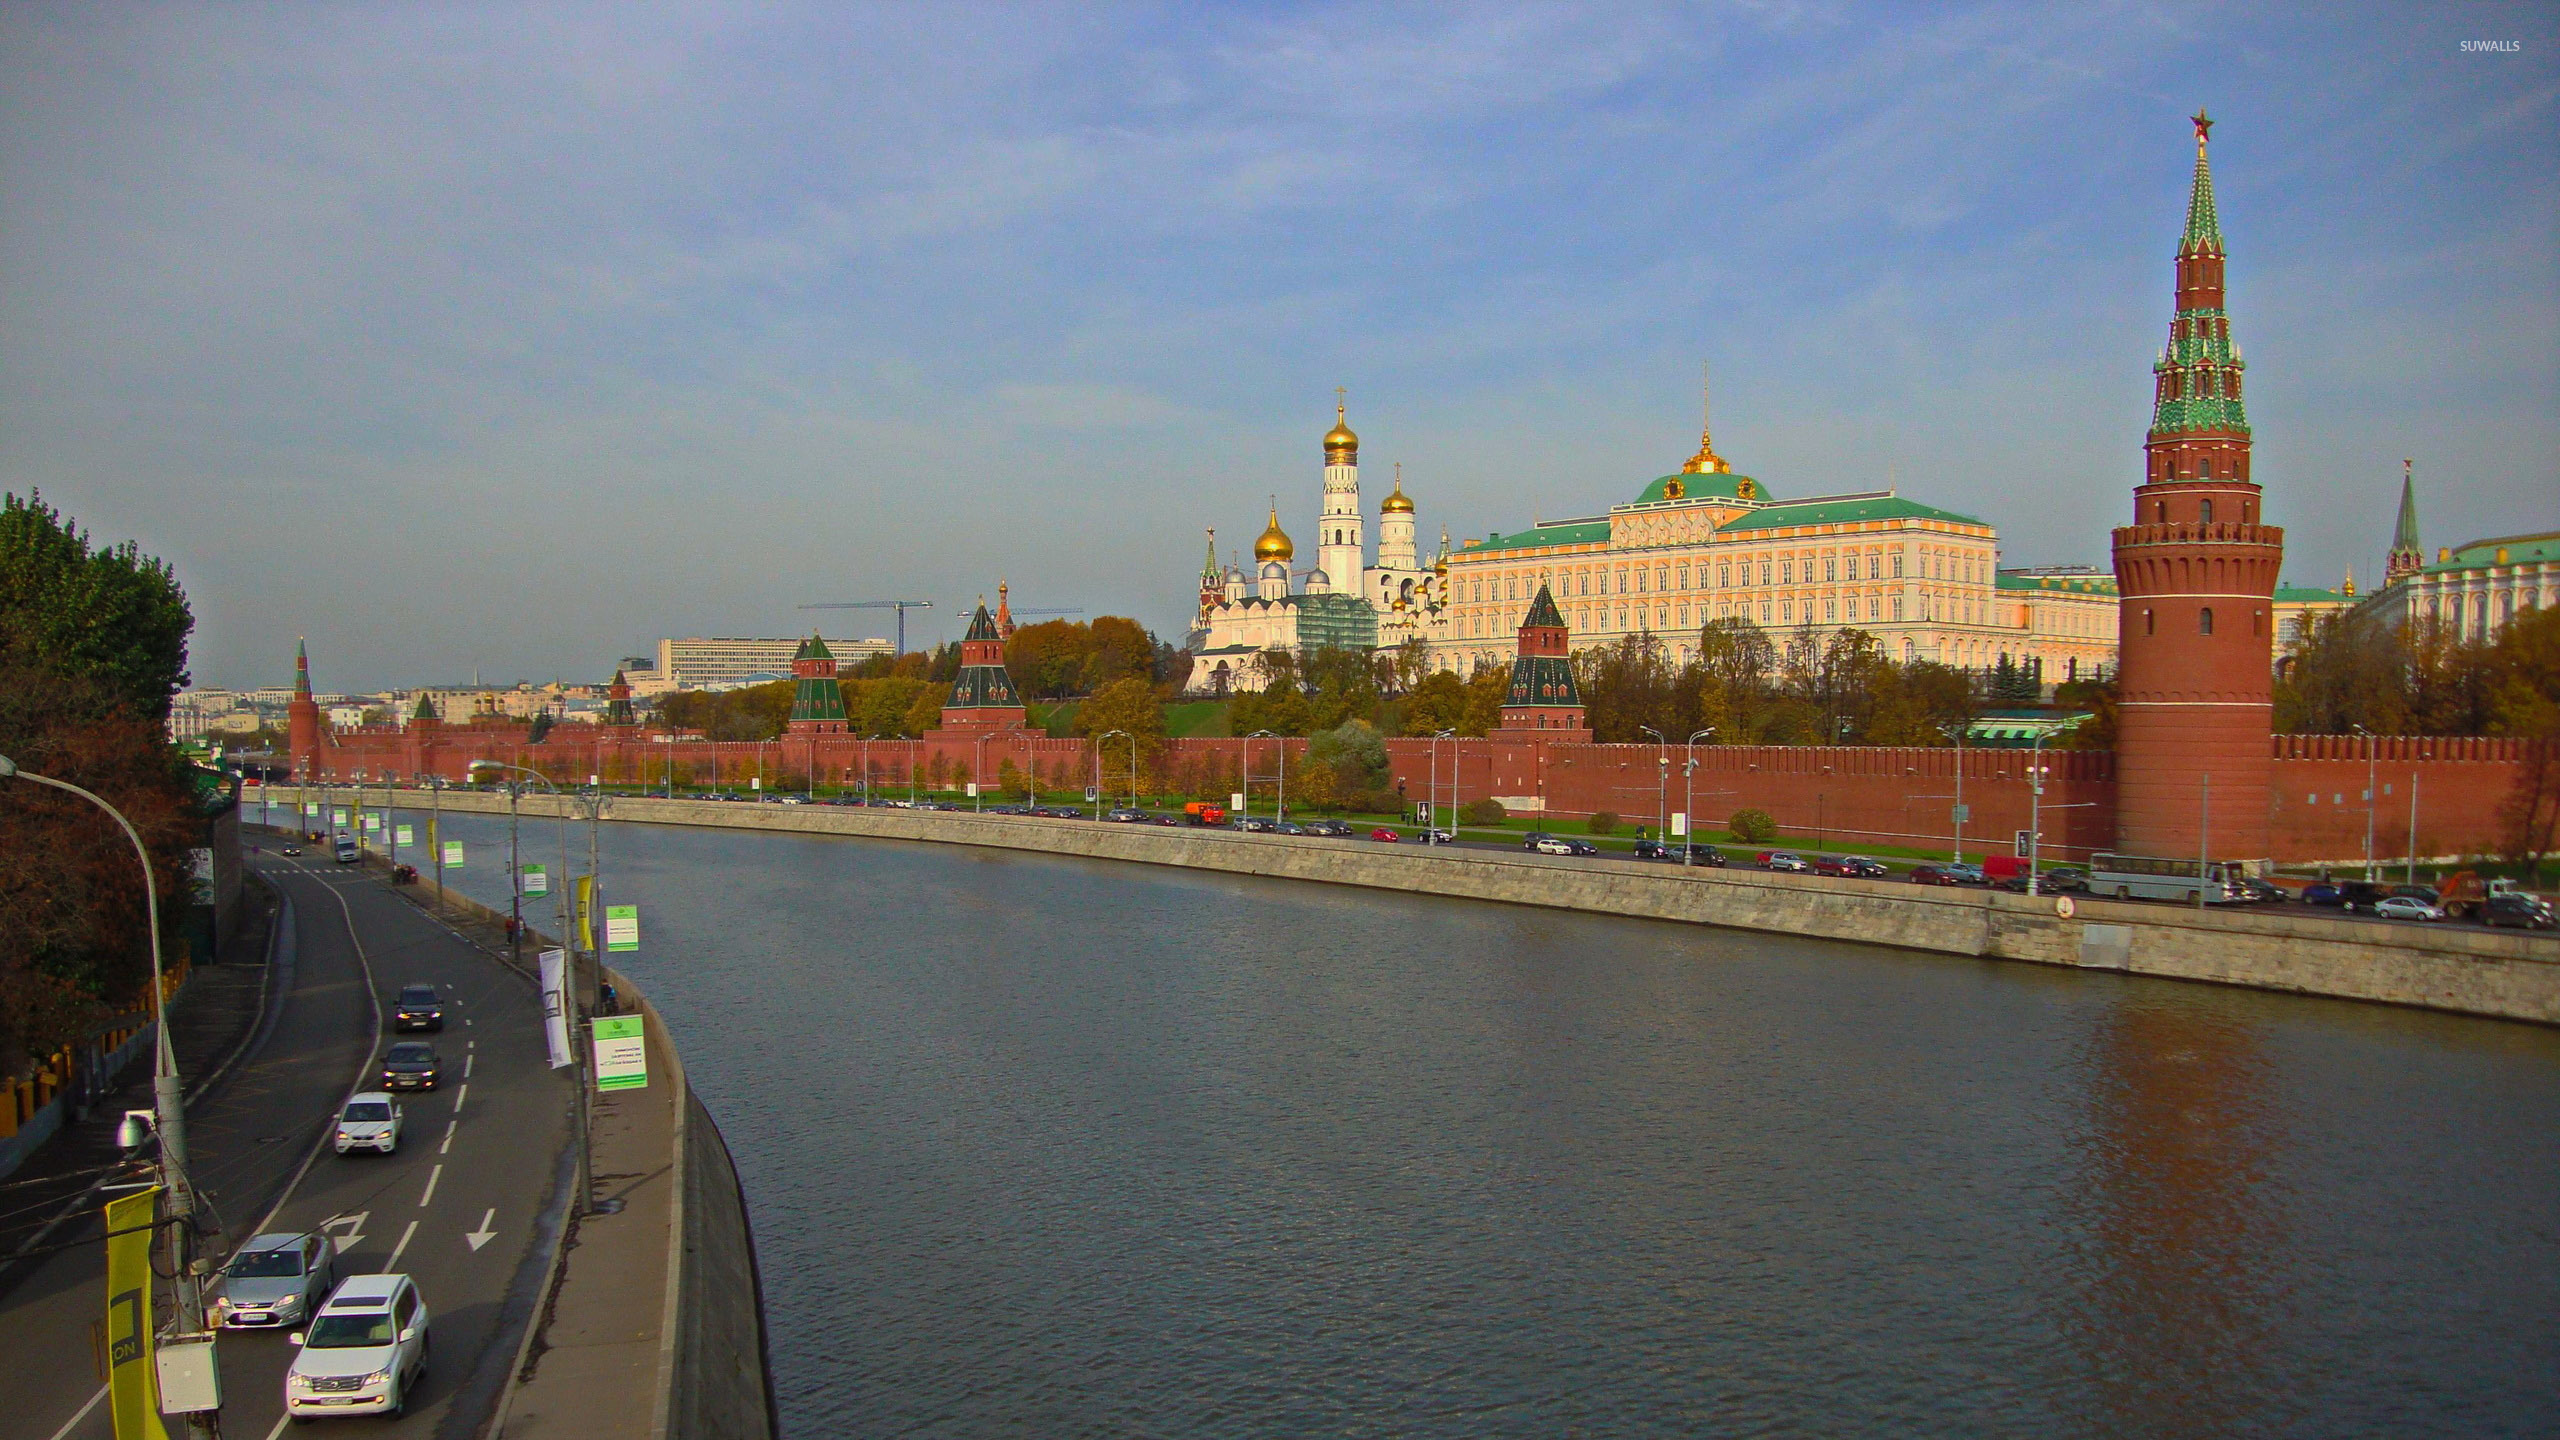 Стены Московского Кремля (20 башен), 1516